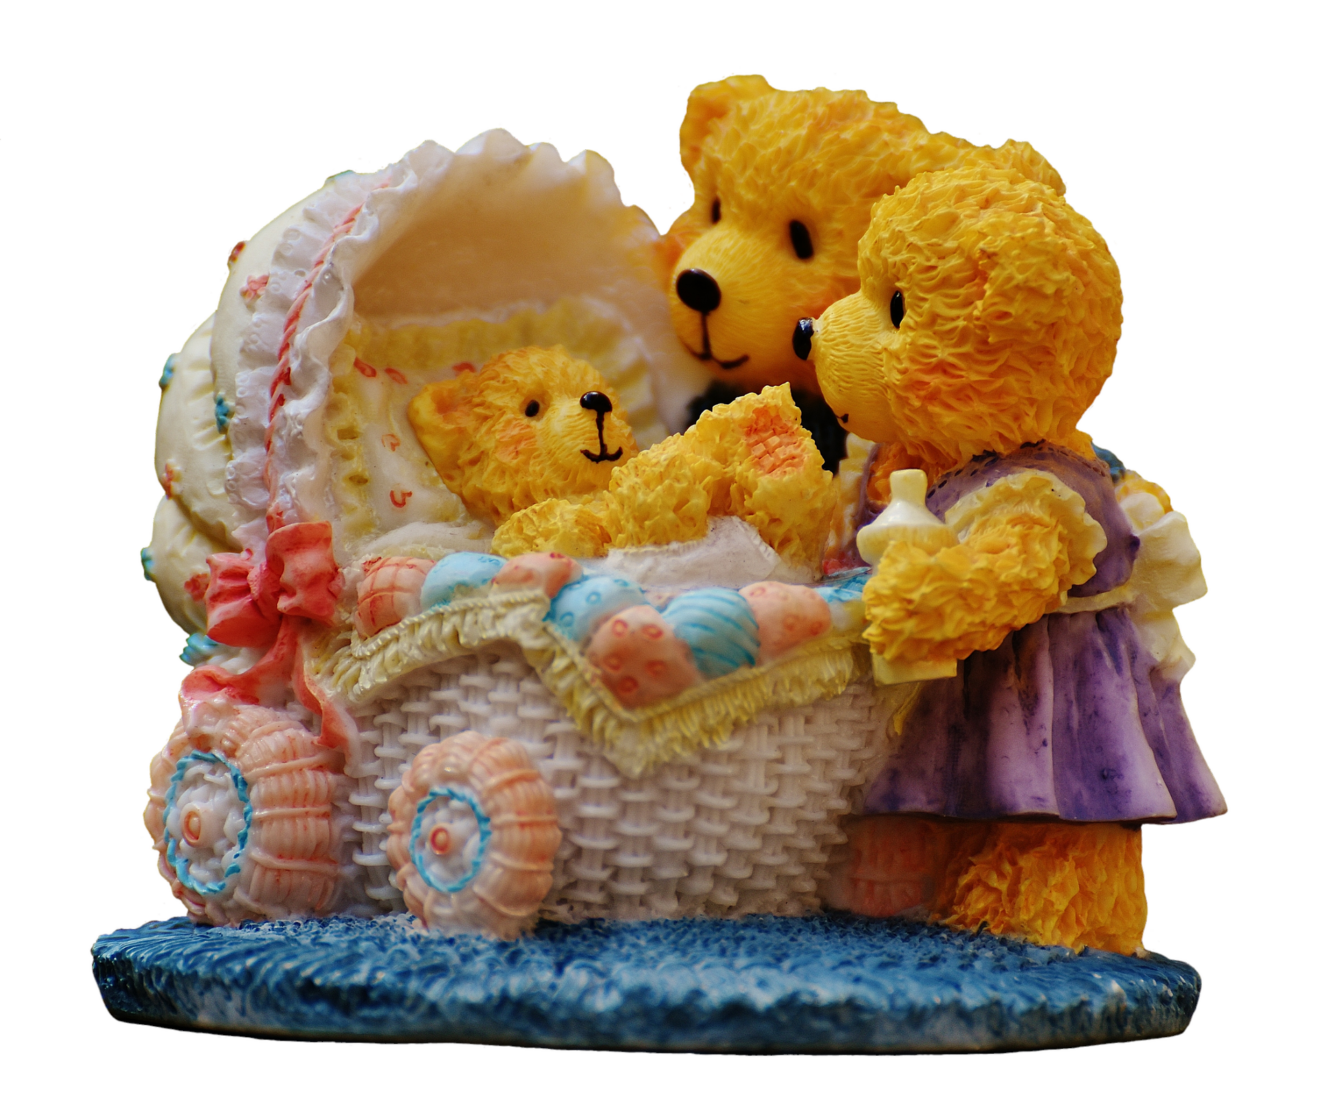 Das Foto zeigt eine Famile Teddybären, das Teddy-Kind liegt in einem Stubenwagen.